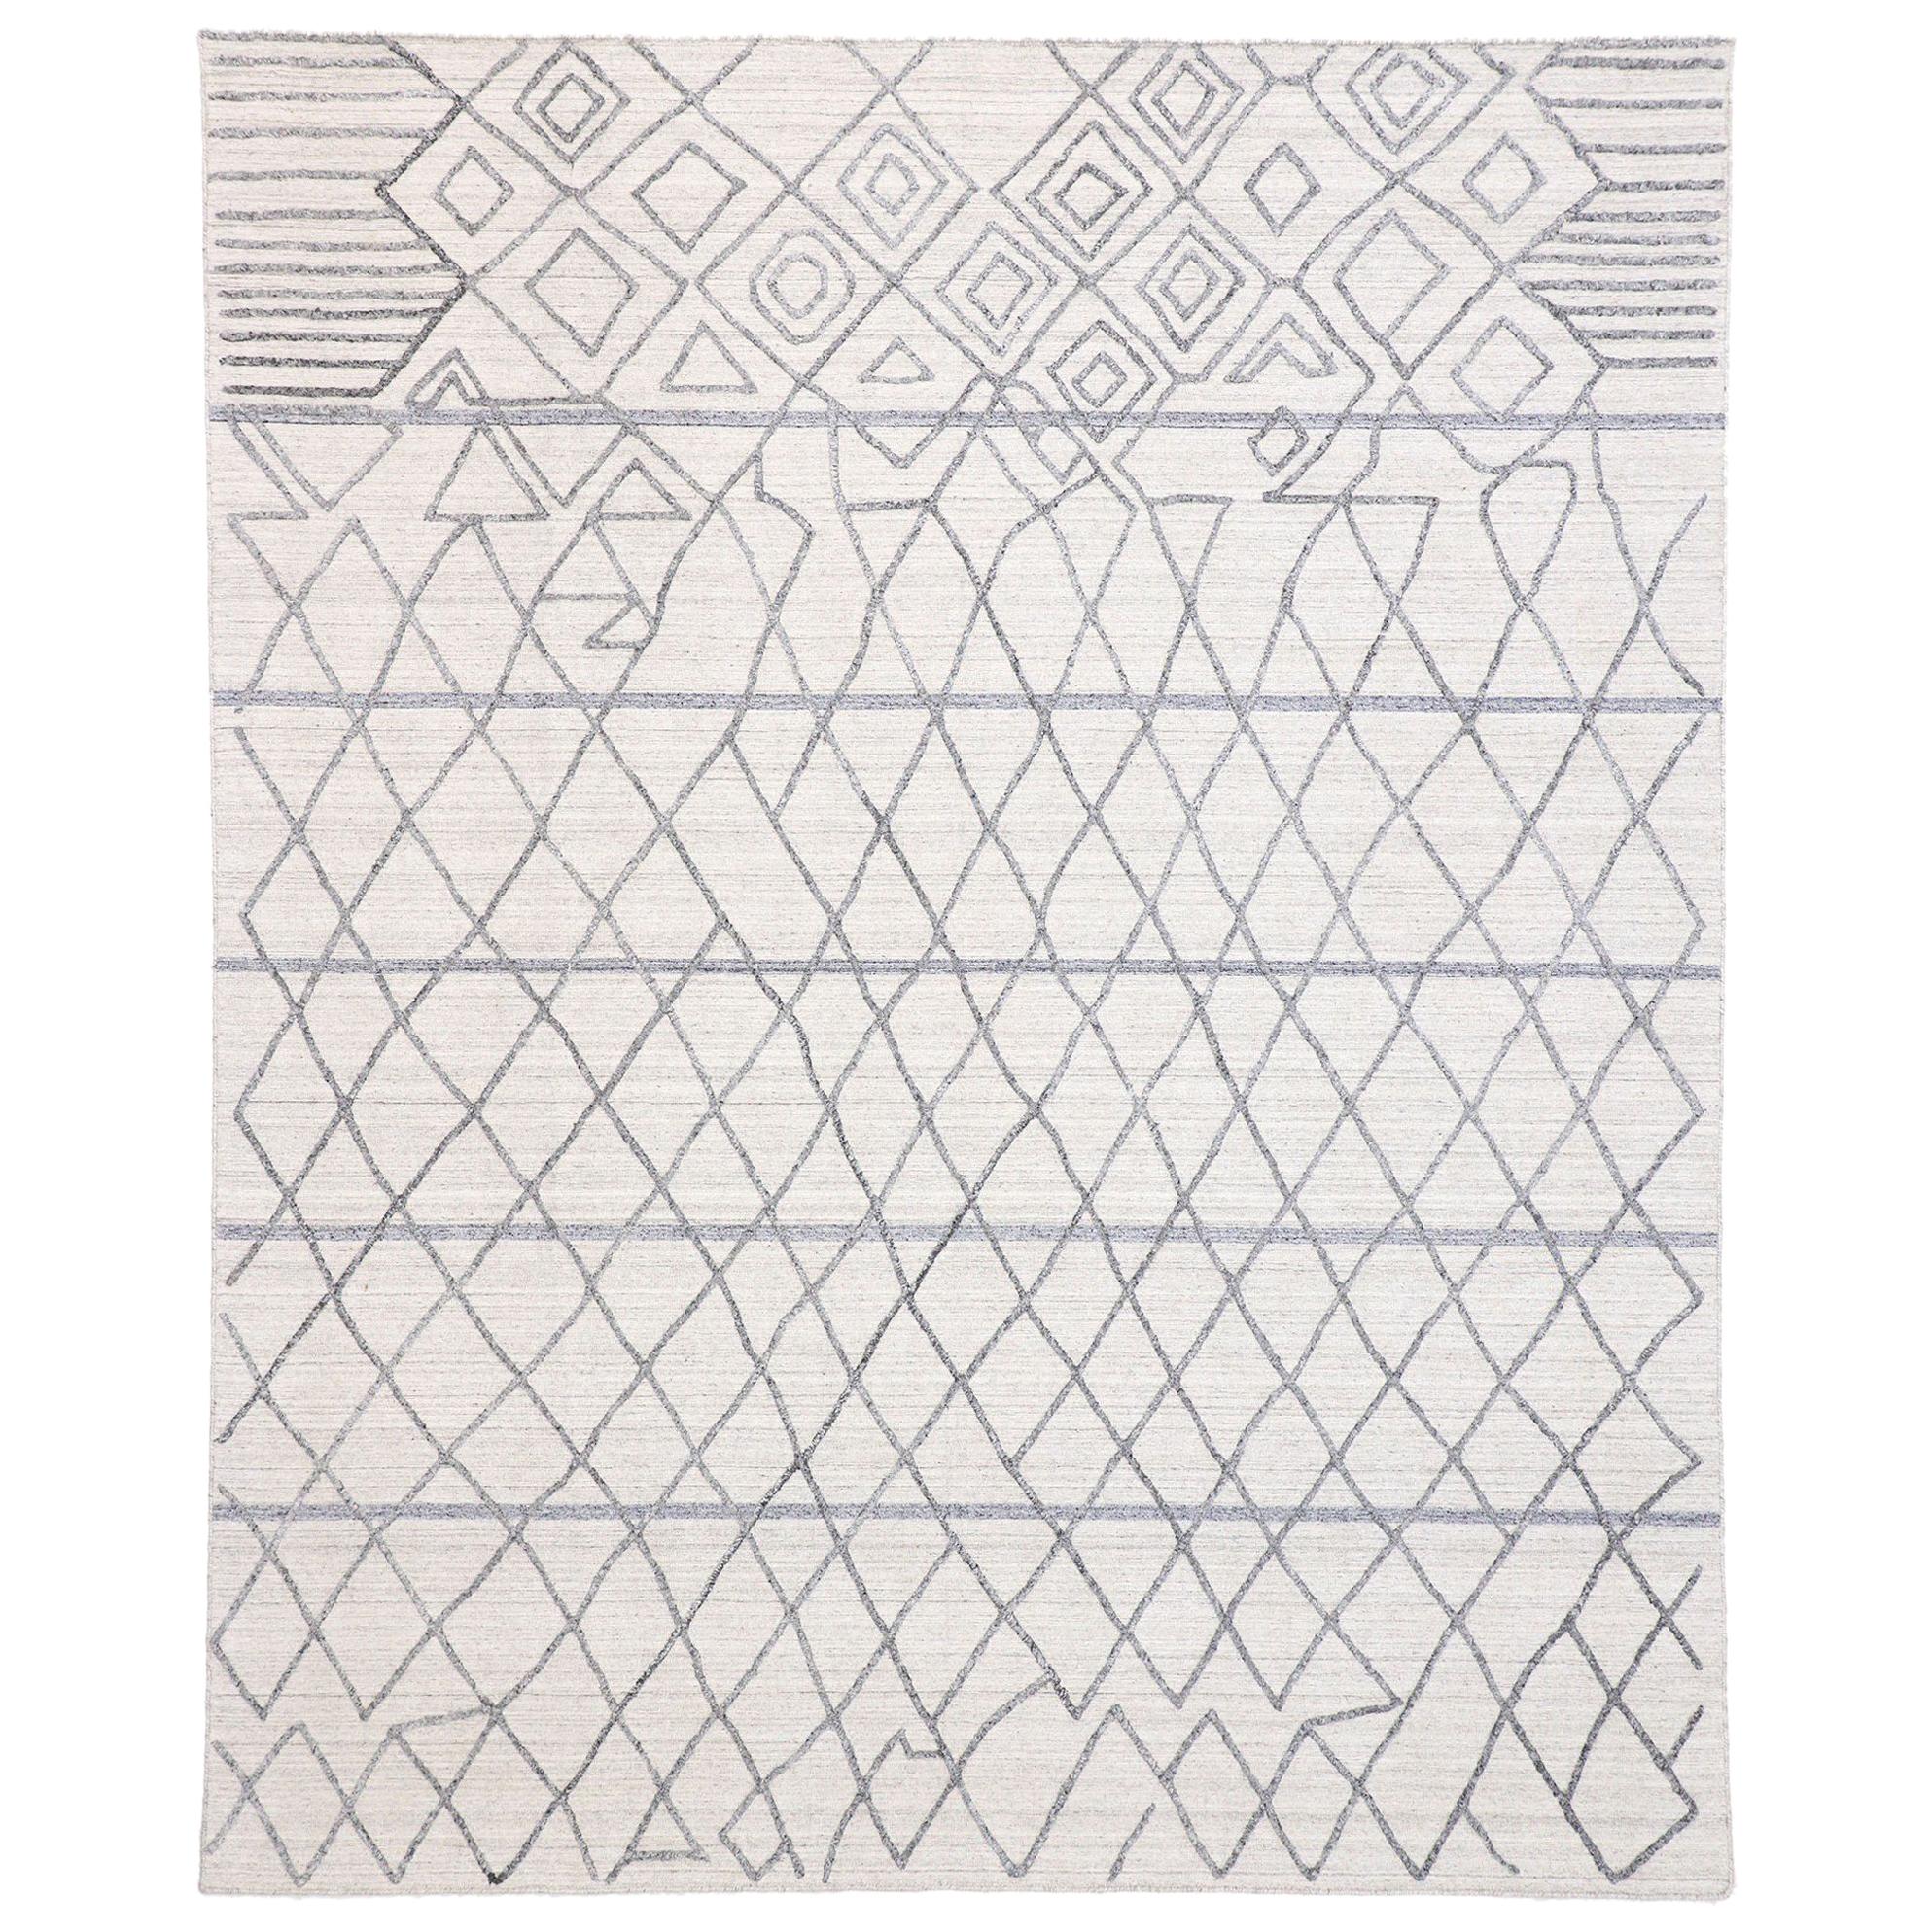 Nouveau tapis gris moderne texturé avec motif de treillis marocain surélevé